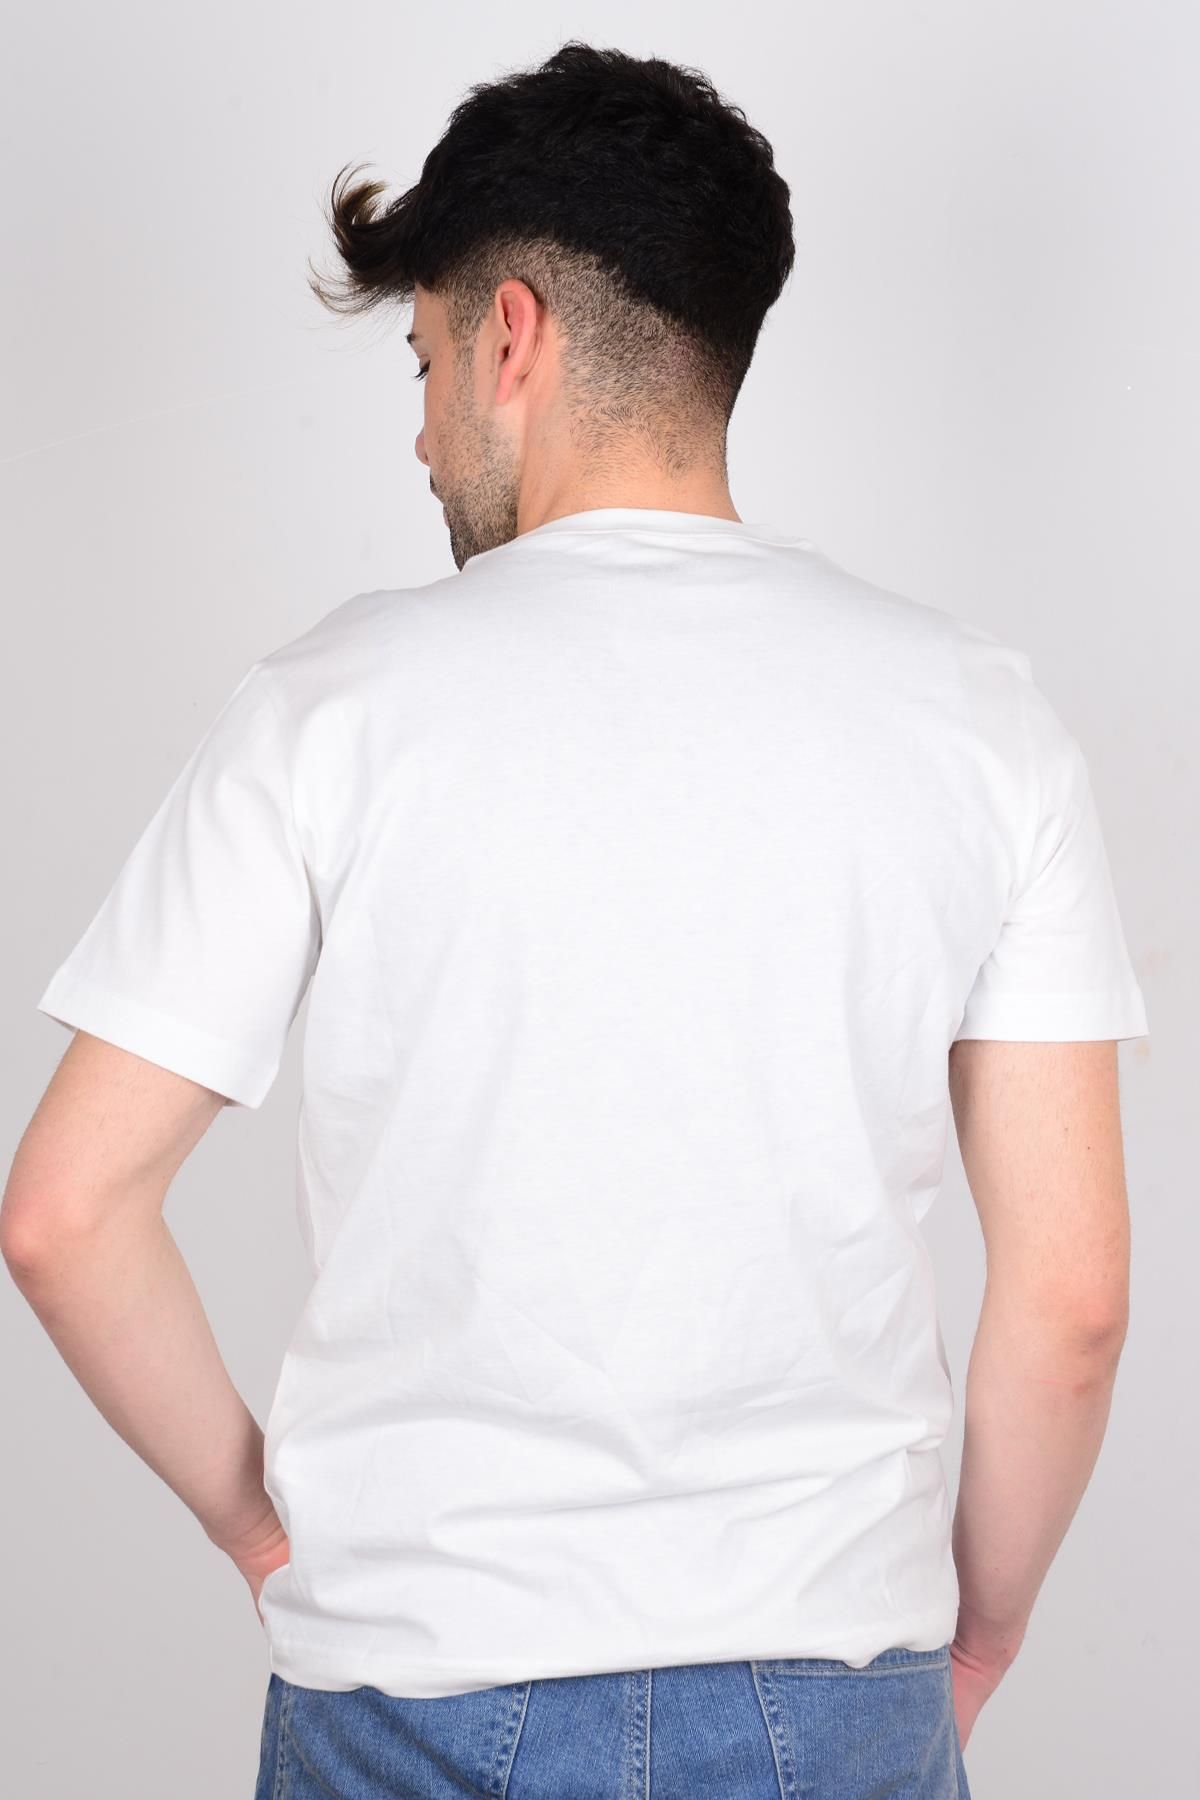 Wrangler W211922102 تی شرت مرد یقه مکتوب جبهه سفید